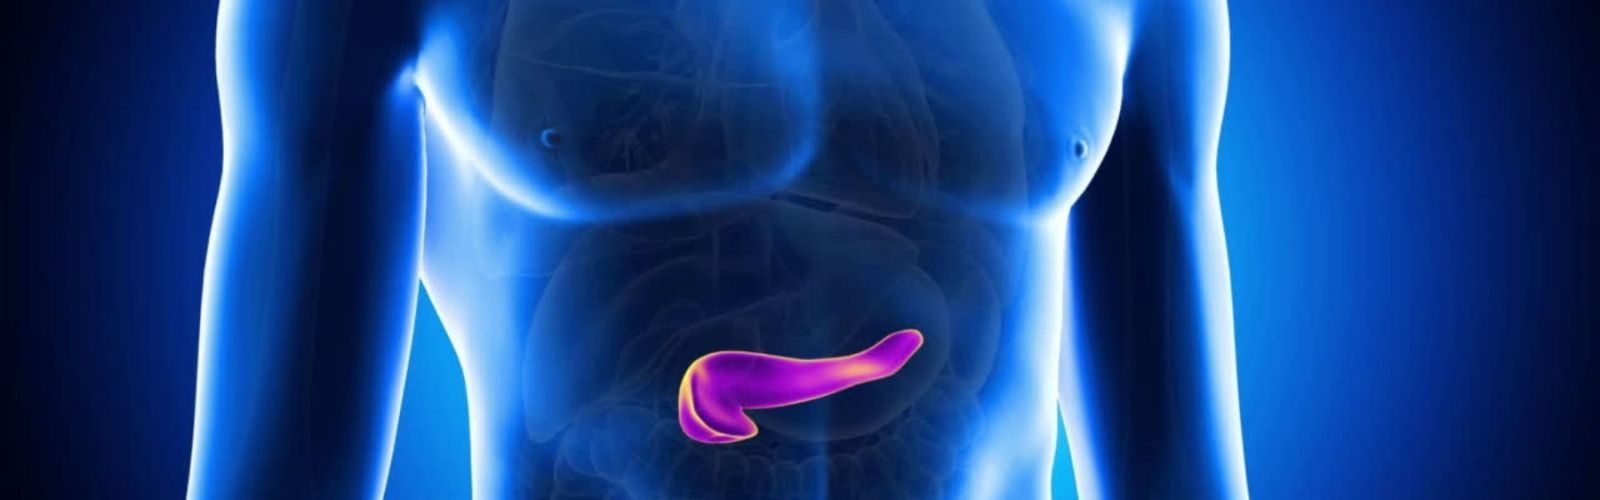 Tumori pancreatici, l’importanza delle fusioni geniche